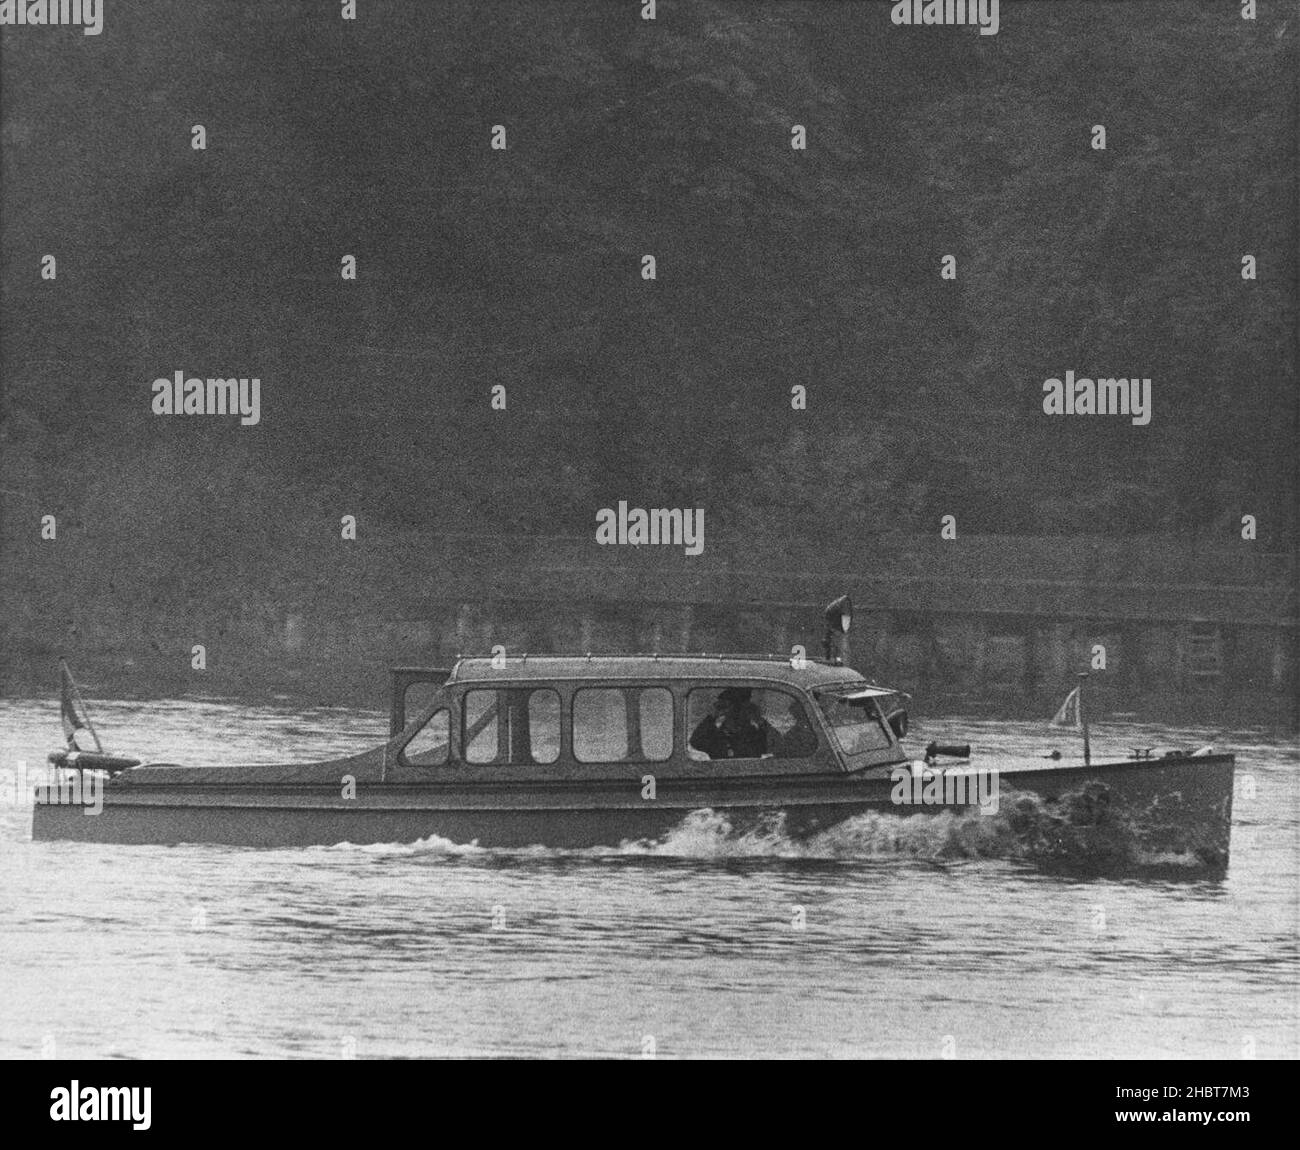 14. August 1961. Ein ostdeutsches Polizeiboot patrouilliert auf der Havel, der Grenze zwischen dem amerikanischen und dem kommunistischen Sektor Deutschlands. Ein Besatzungsmitglied nutzt Ferngläser, um die westliche Seite des Flusses zu scannen Stockfoto